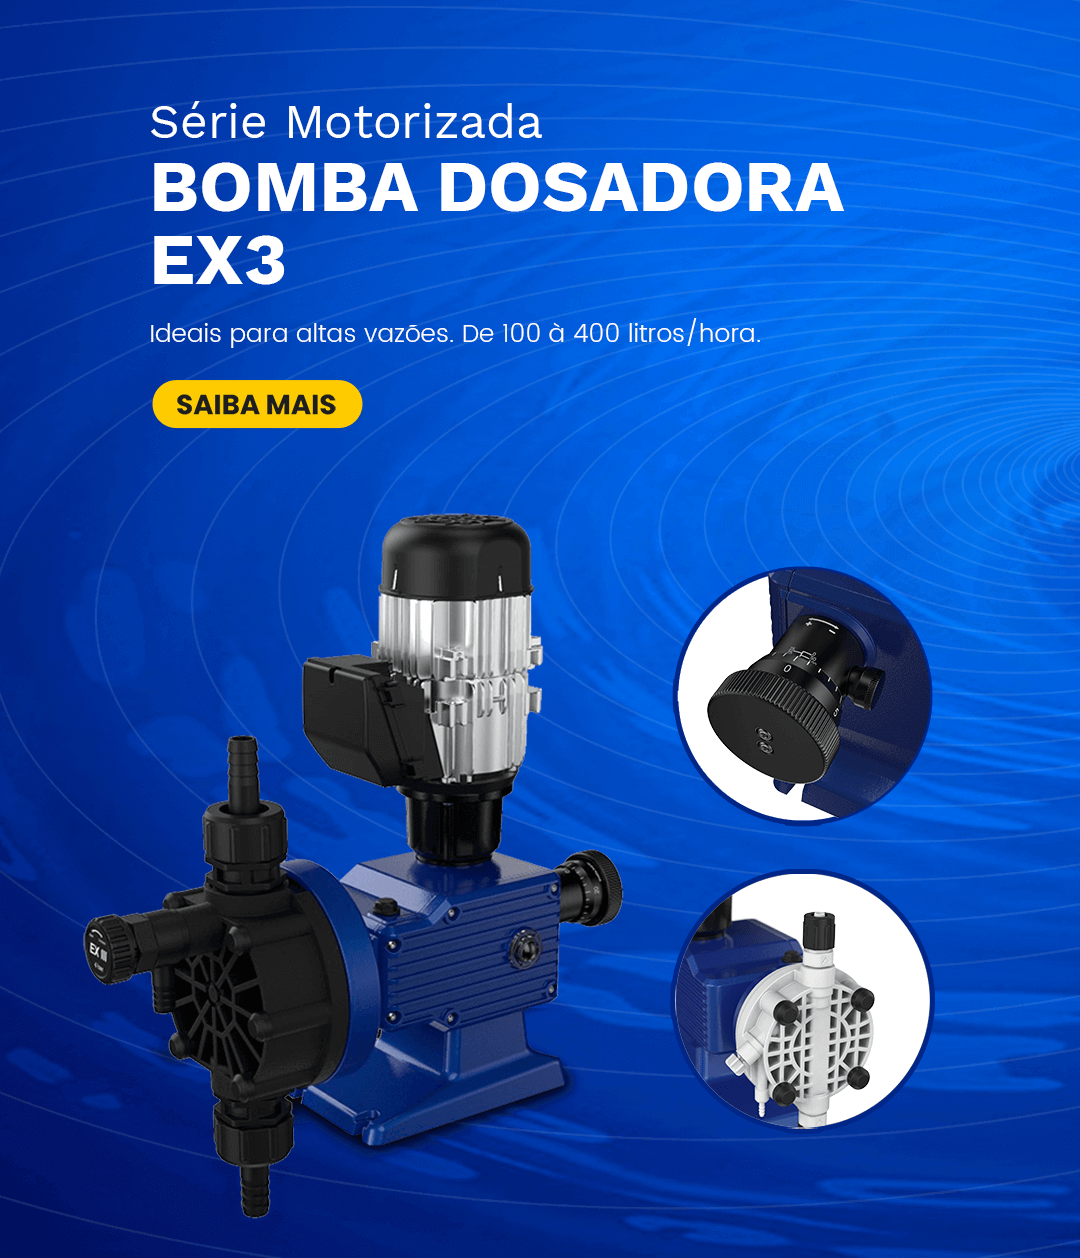 Bomba Dosadora EX3 - Saiba mais